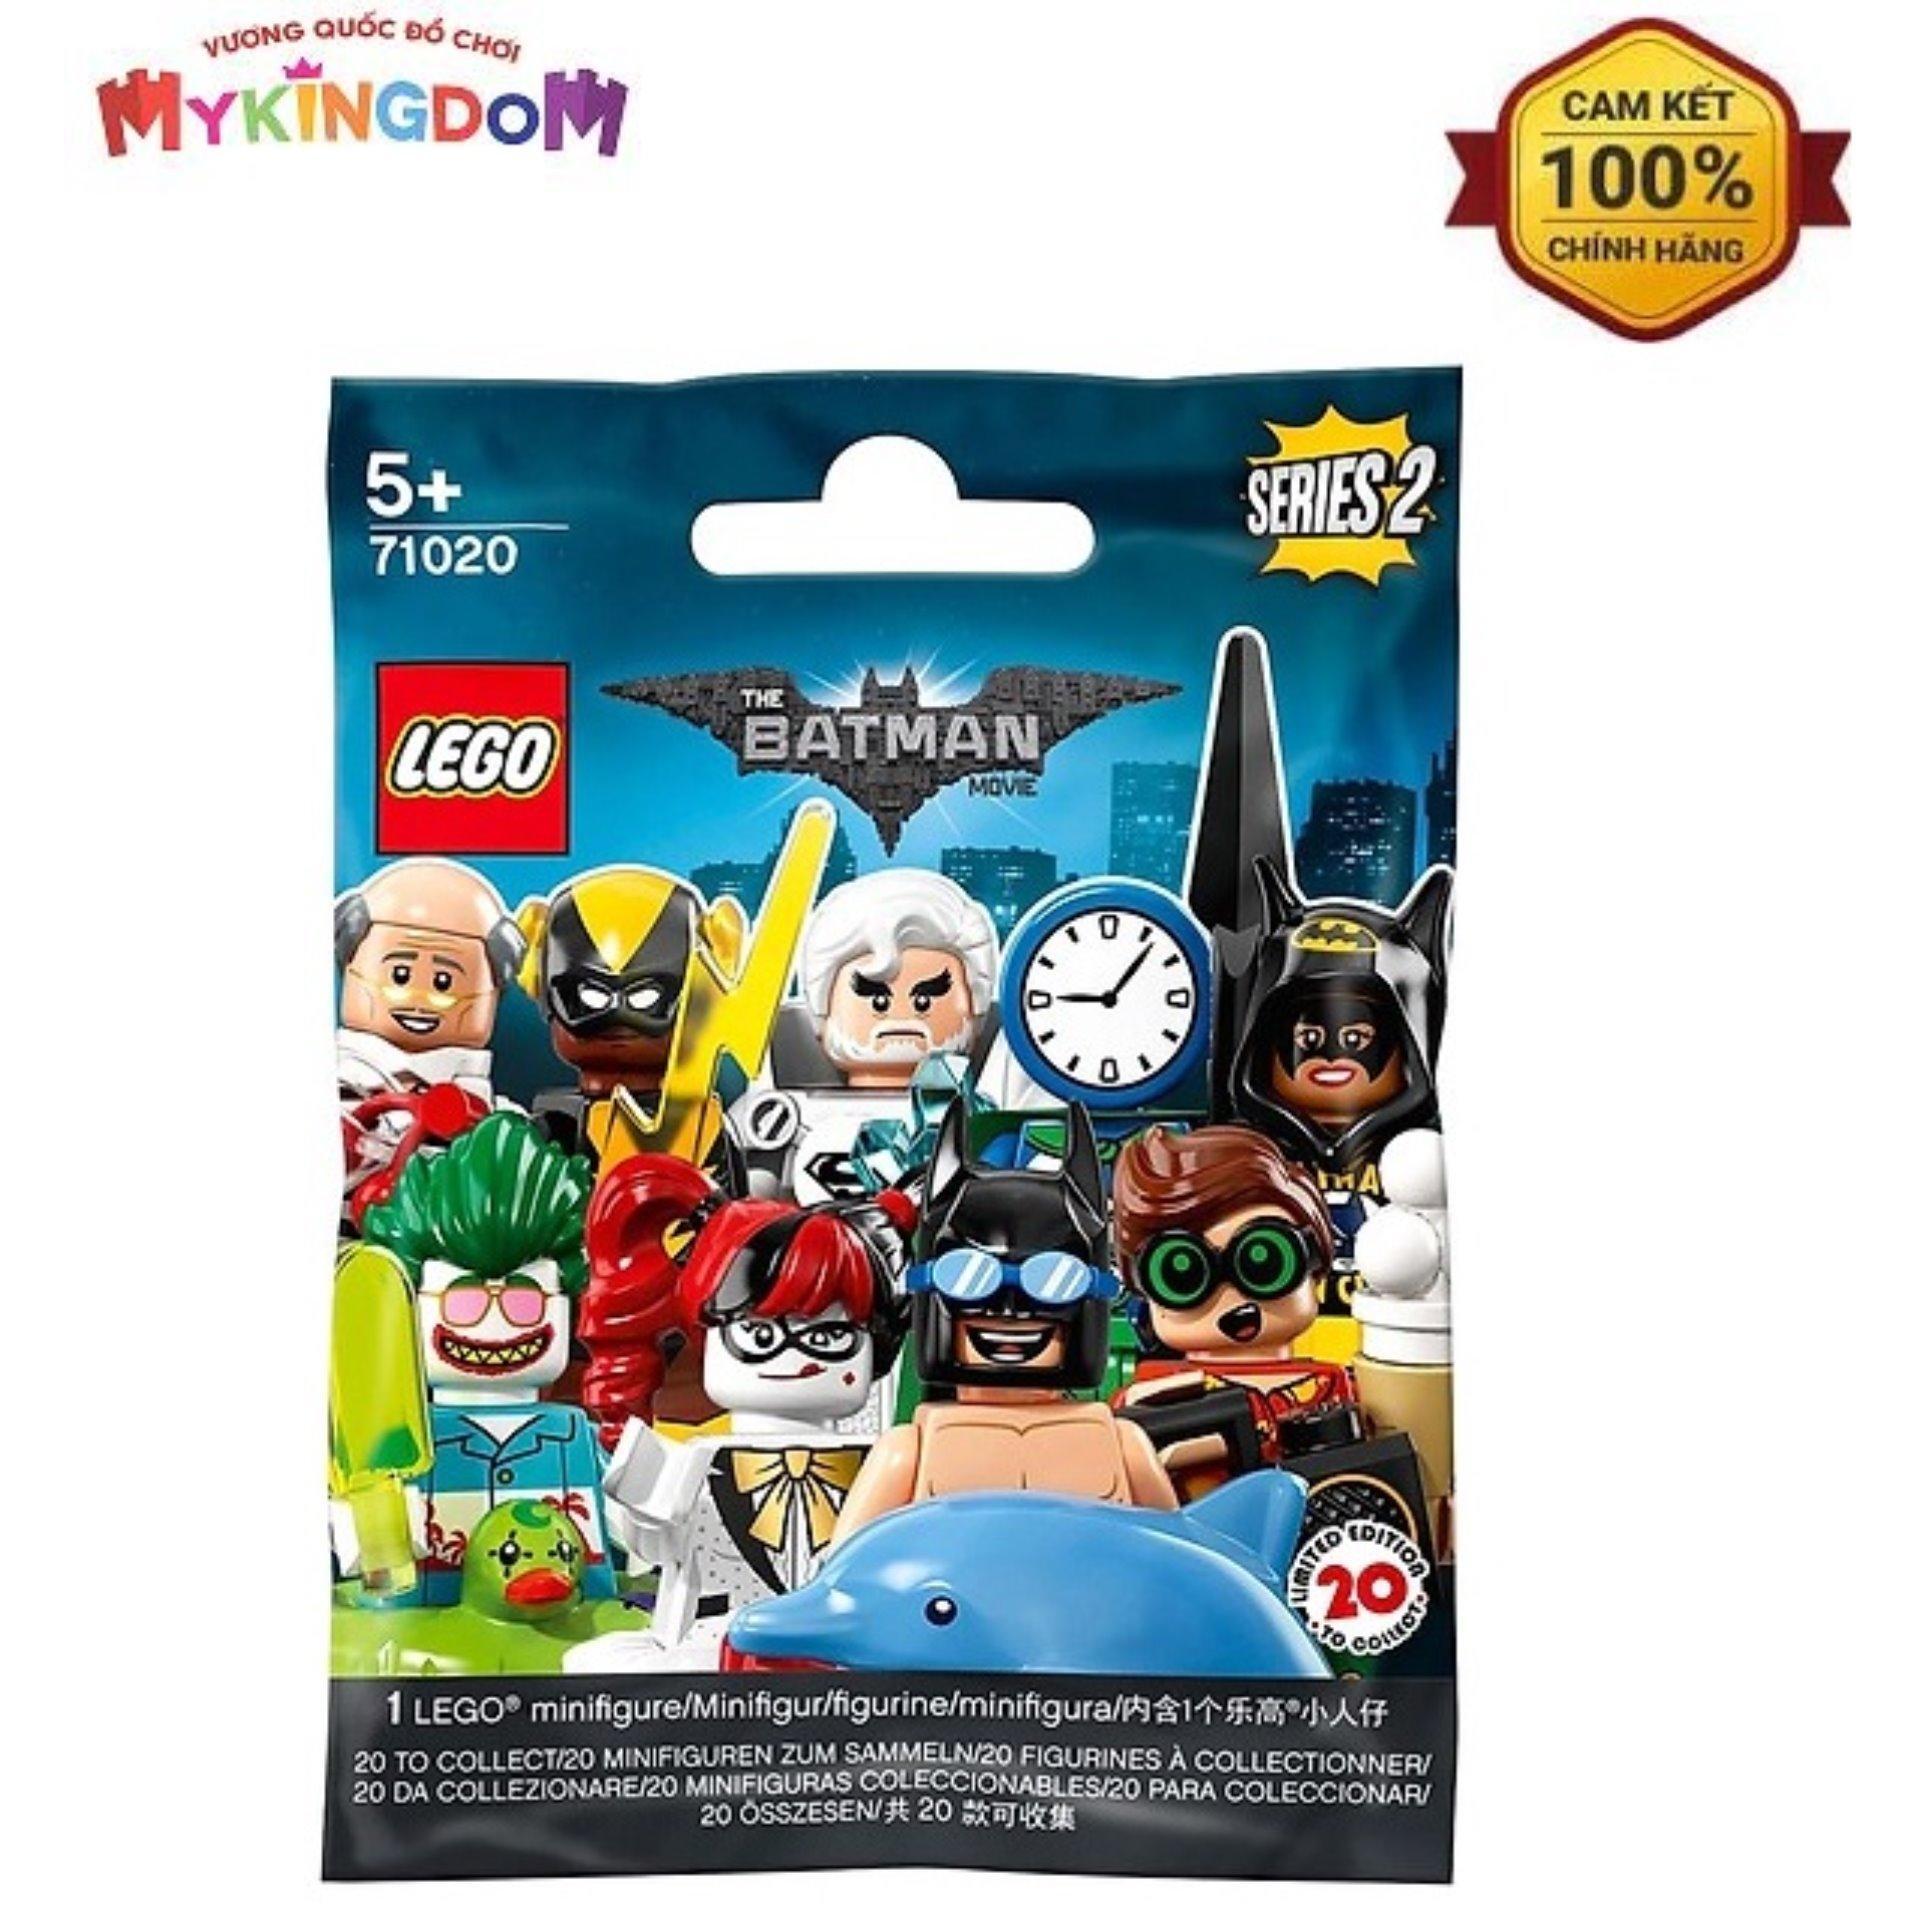 Đồ chơi lắp ráp Lego Minifigures 71020 - Người Dơi Tắm Biển Swimming Pool Batman